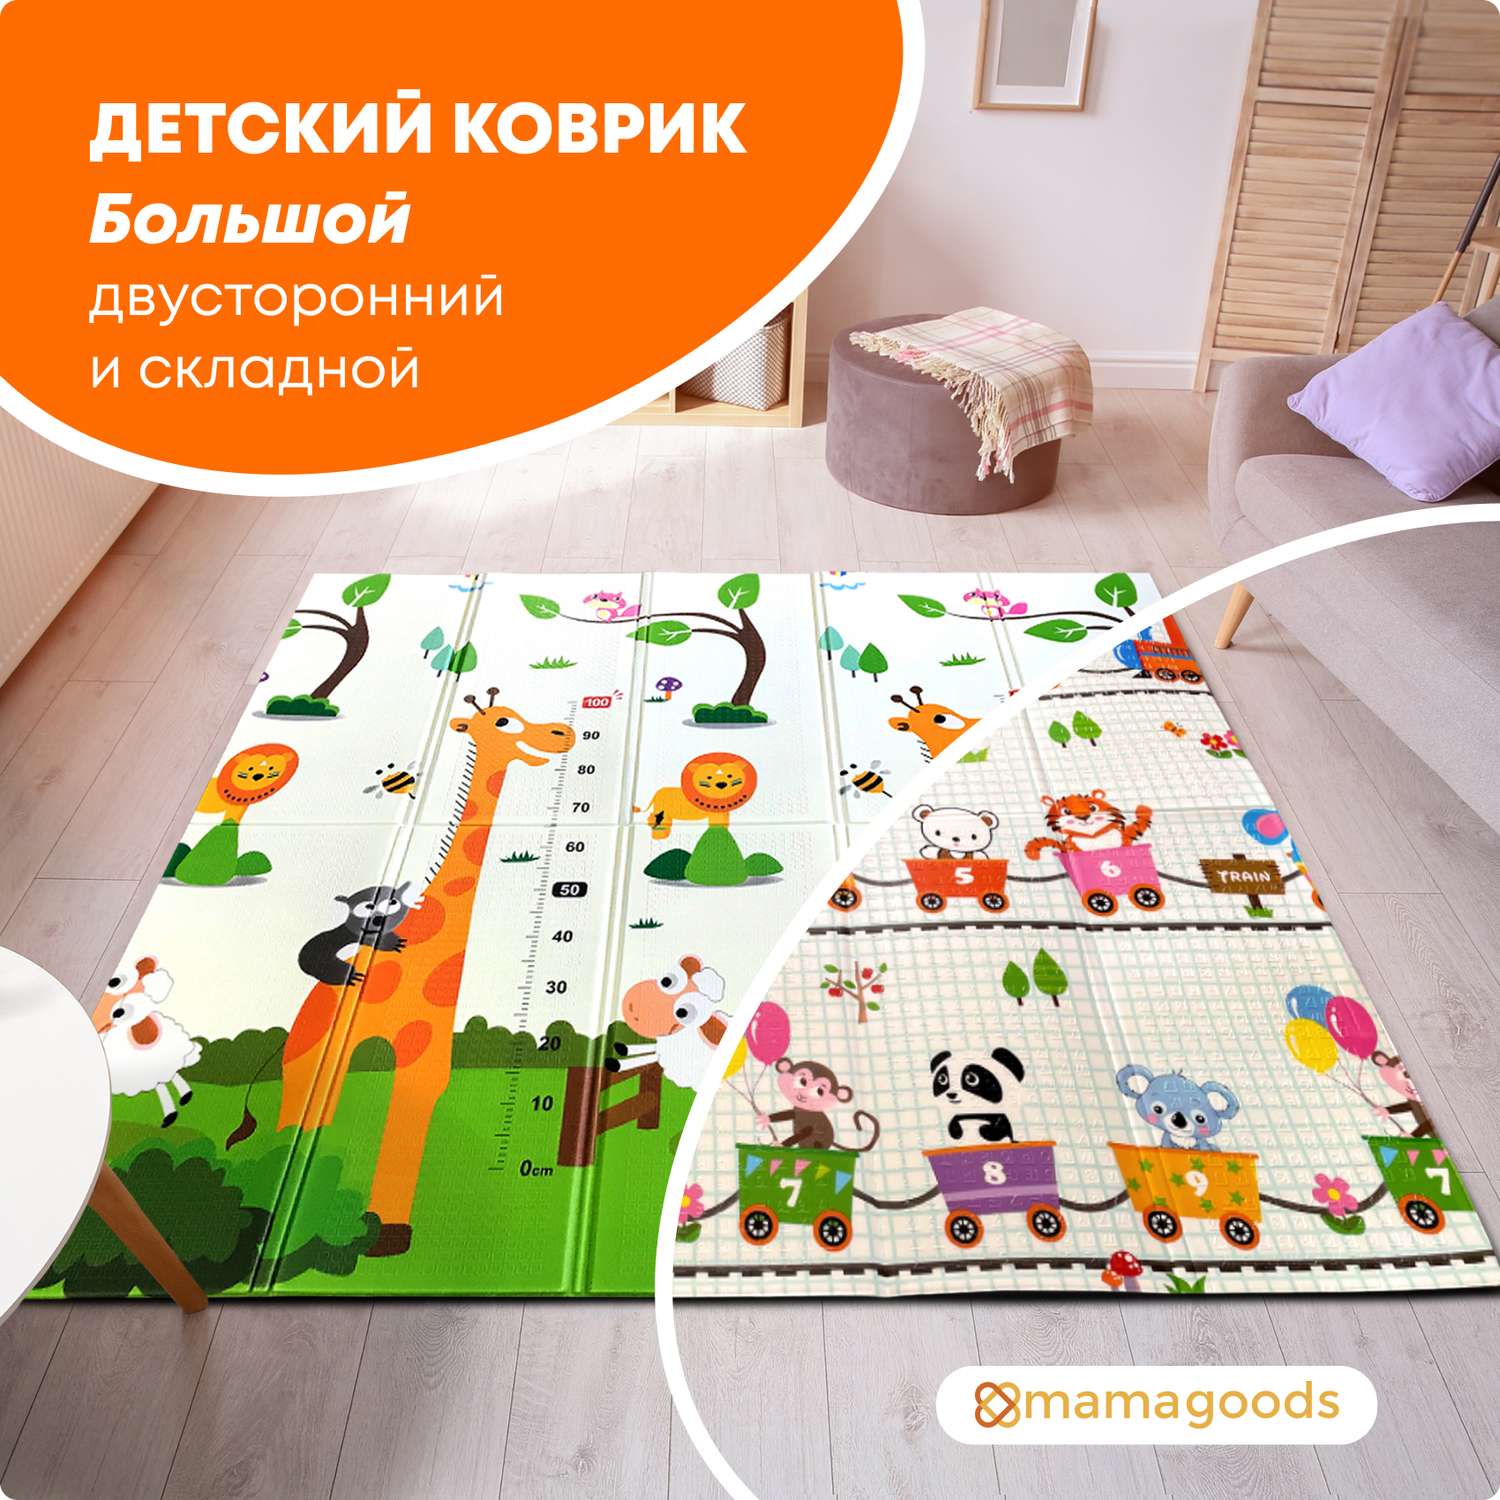 Развивающий коврик для новорожденного детский коврик ковер игрушки для новорожденных от 0